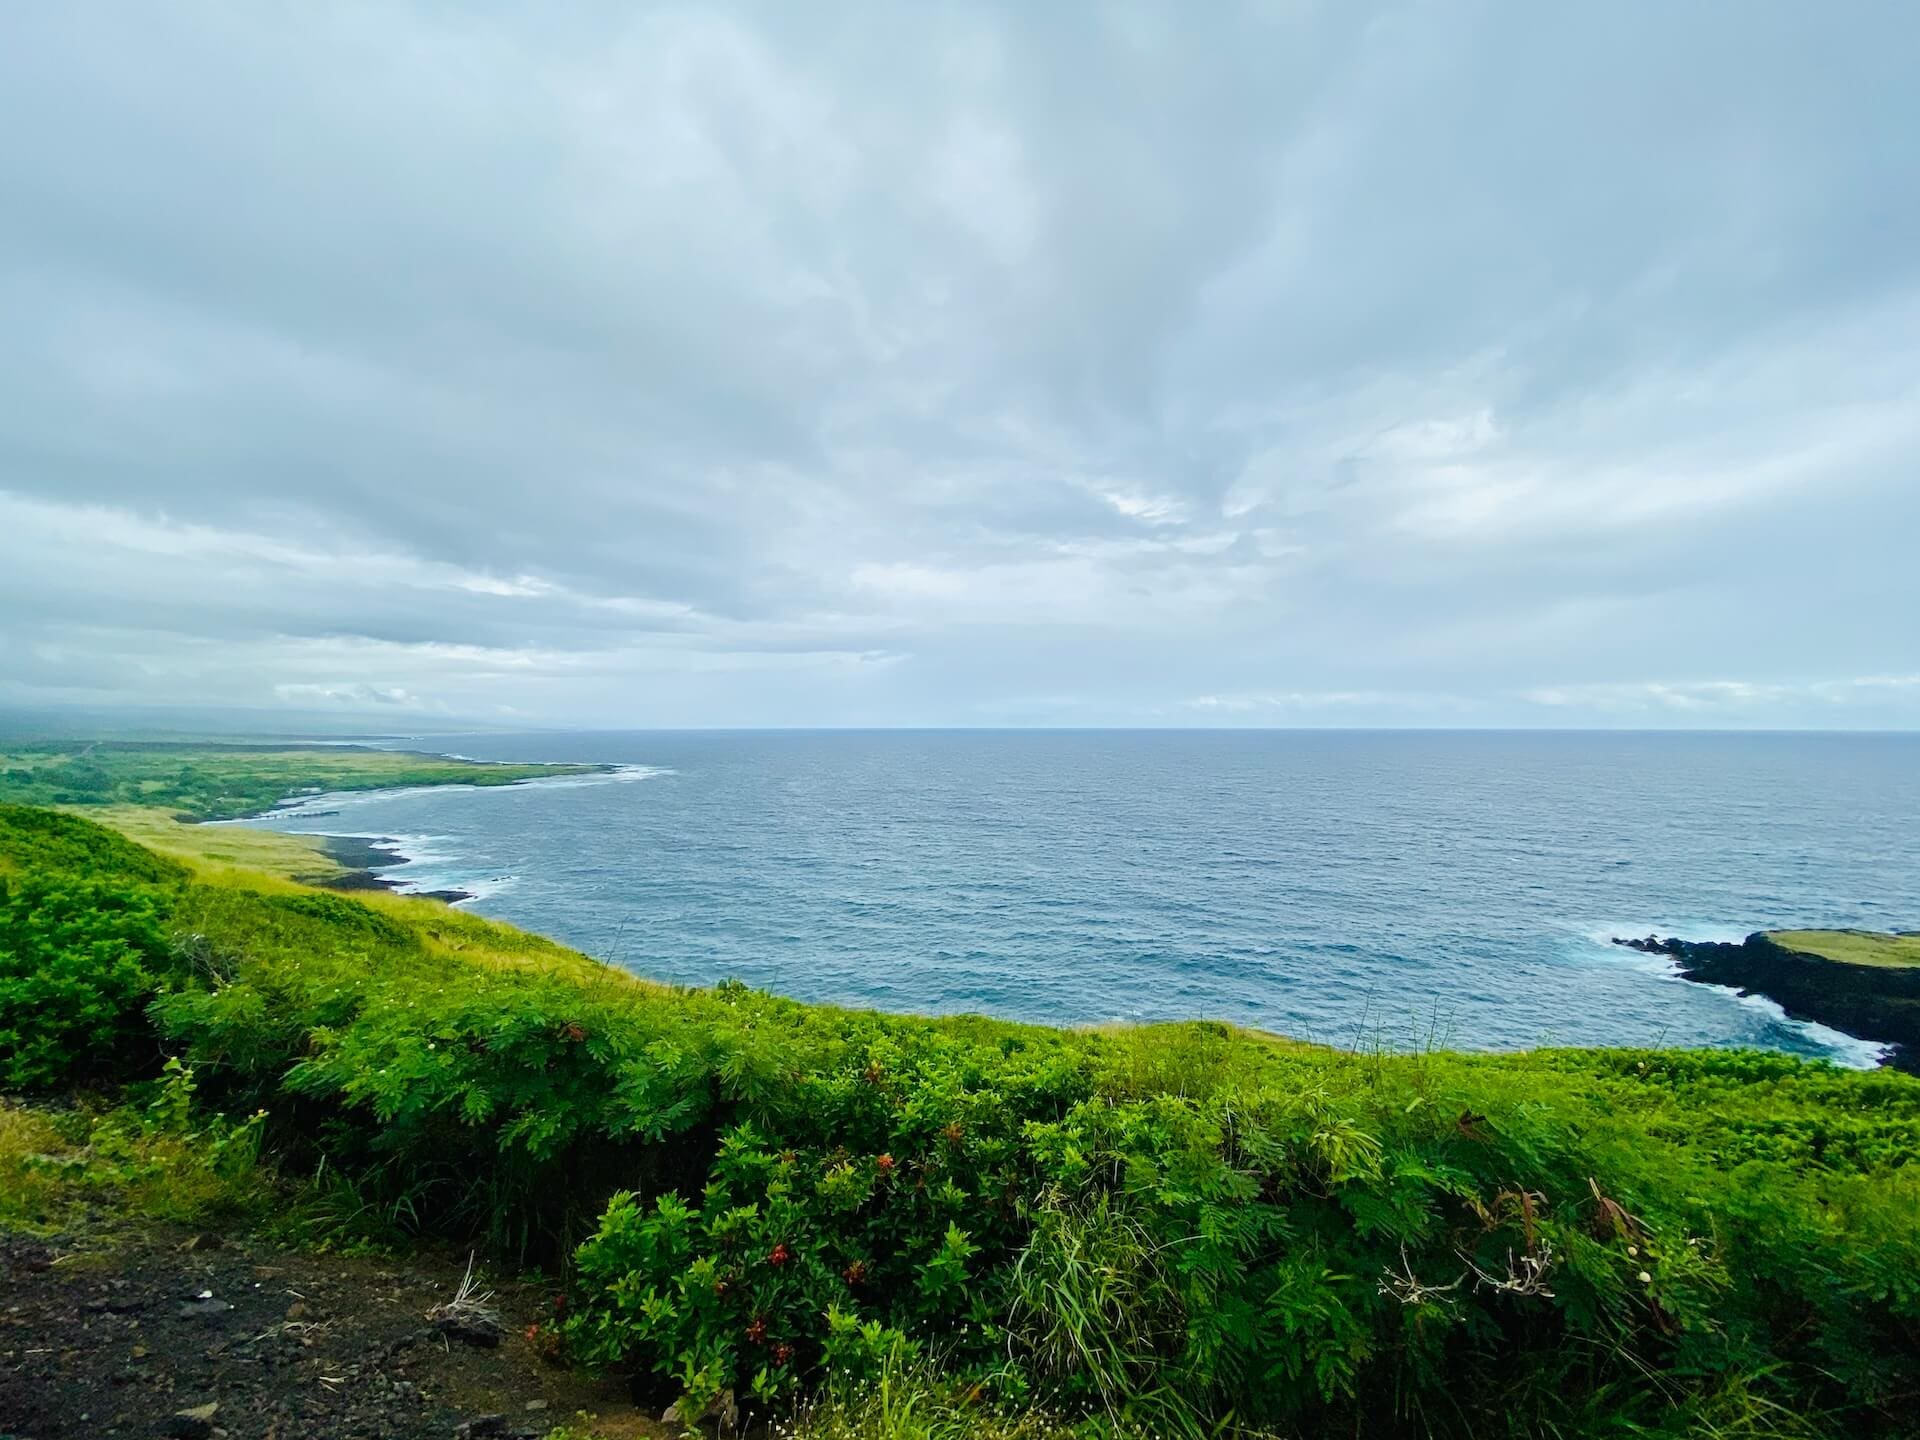 Pacific ocean views big island hawaii